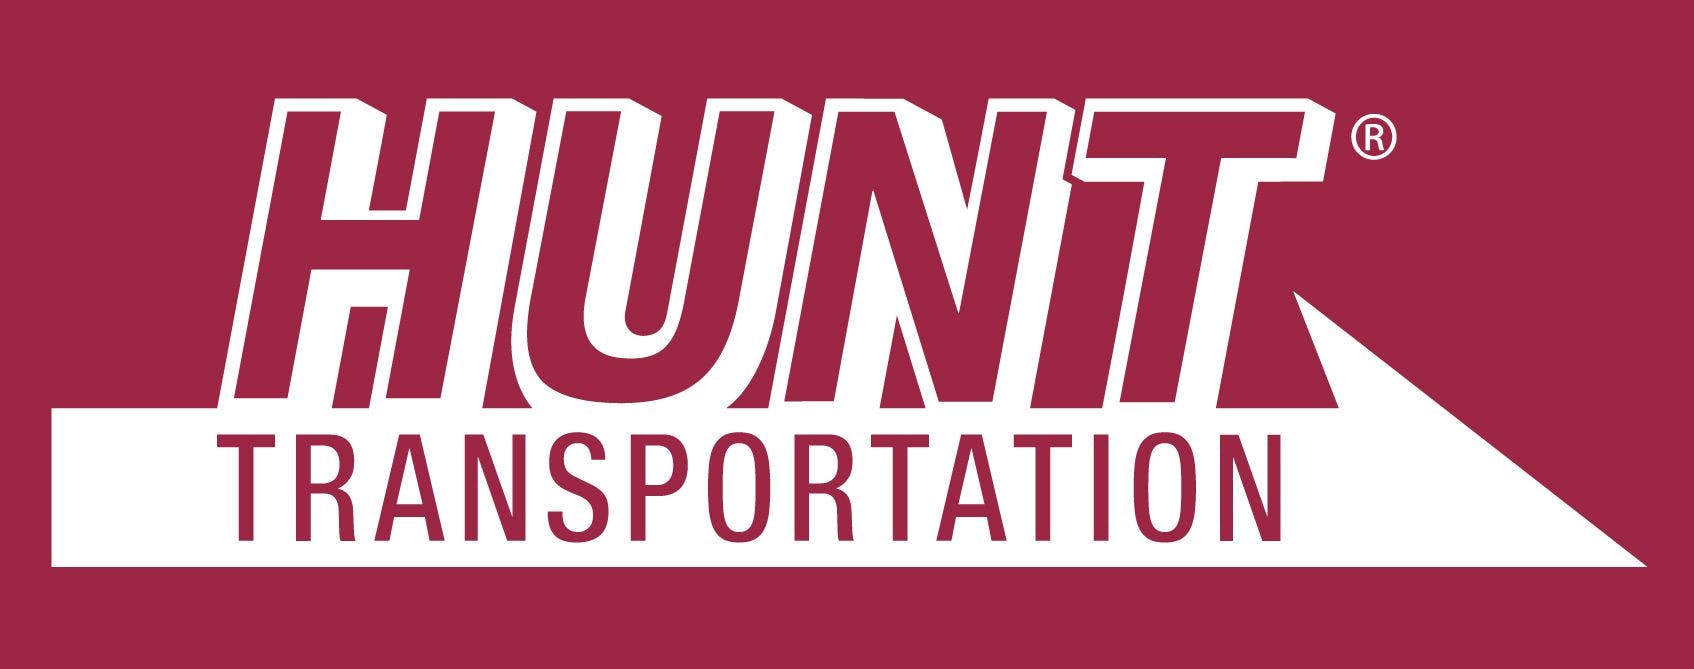 Logo for Hunt Transportation